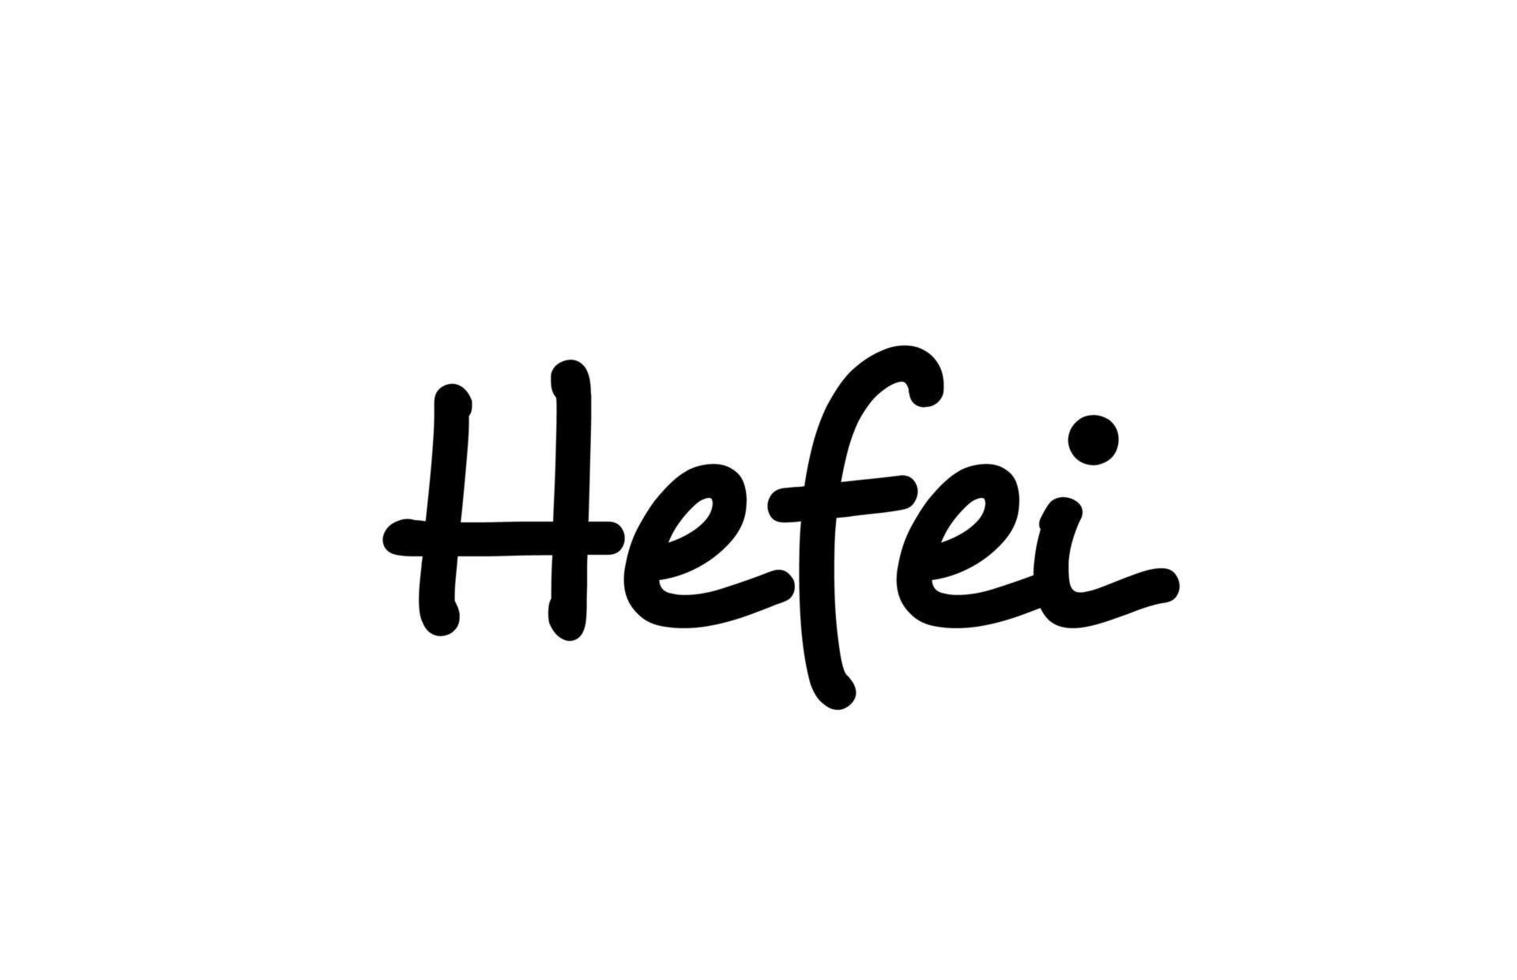 Hefei City palabra manuscrita texto letras a mano. texto de caligrafía. tipografía en color negro vector